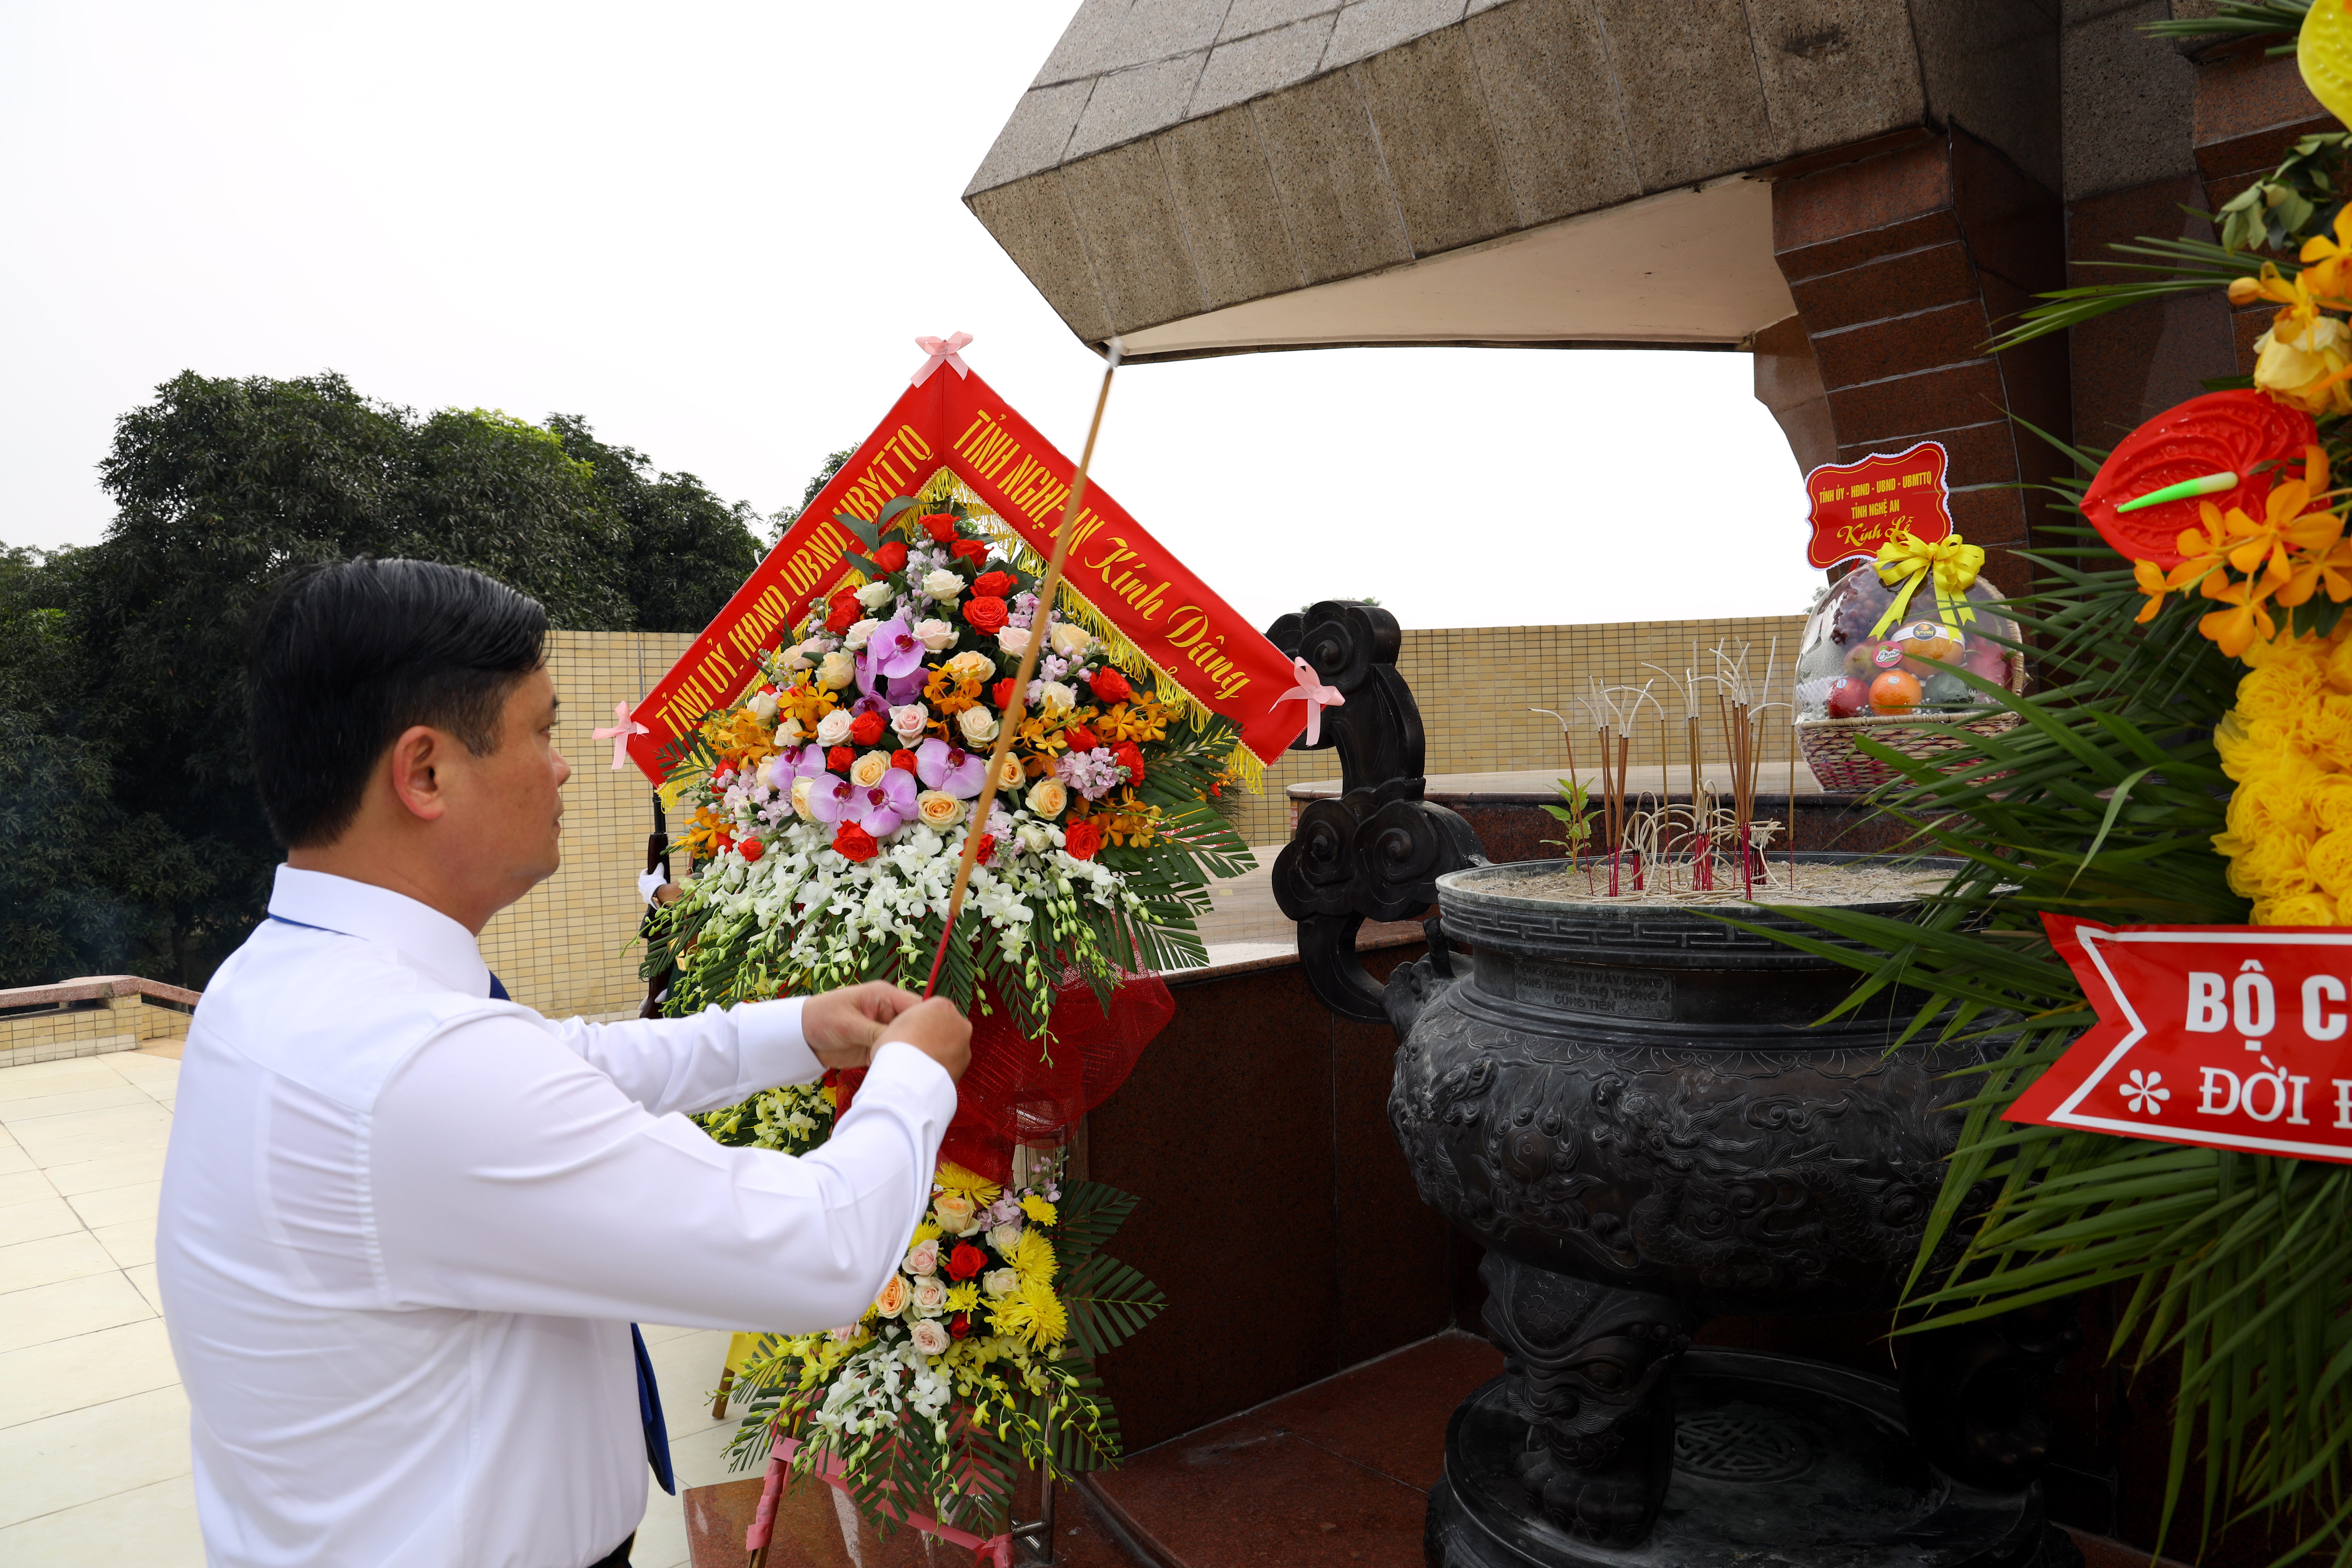 Đồng chí Thái Thanh Quý - Ủy viên Dự khuyết Trung ương Đảng, Bí thư Tỉnh ủy  dâng hương tại đài tưởng niệm Liệt sỹ tại Nghĩa trang Liệt sỹ Thành phố Vinh. Ảnh: Nguyên Sơn